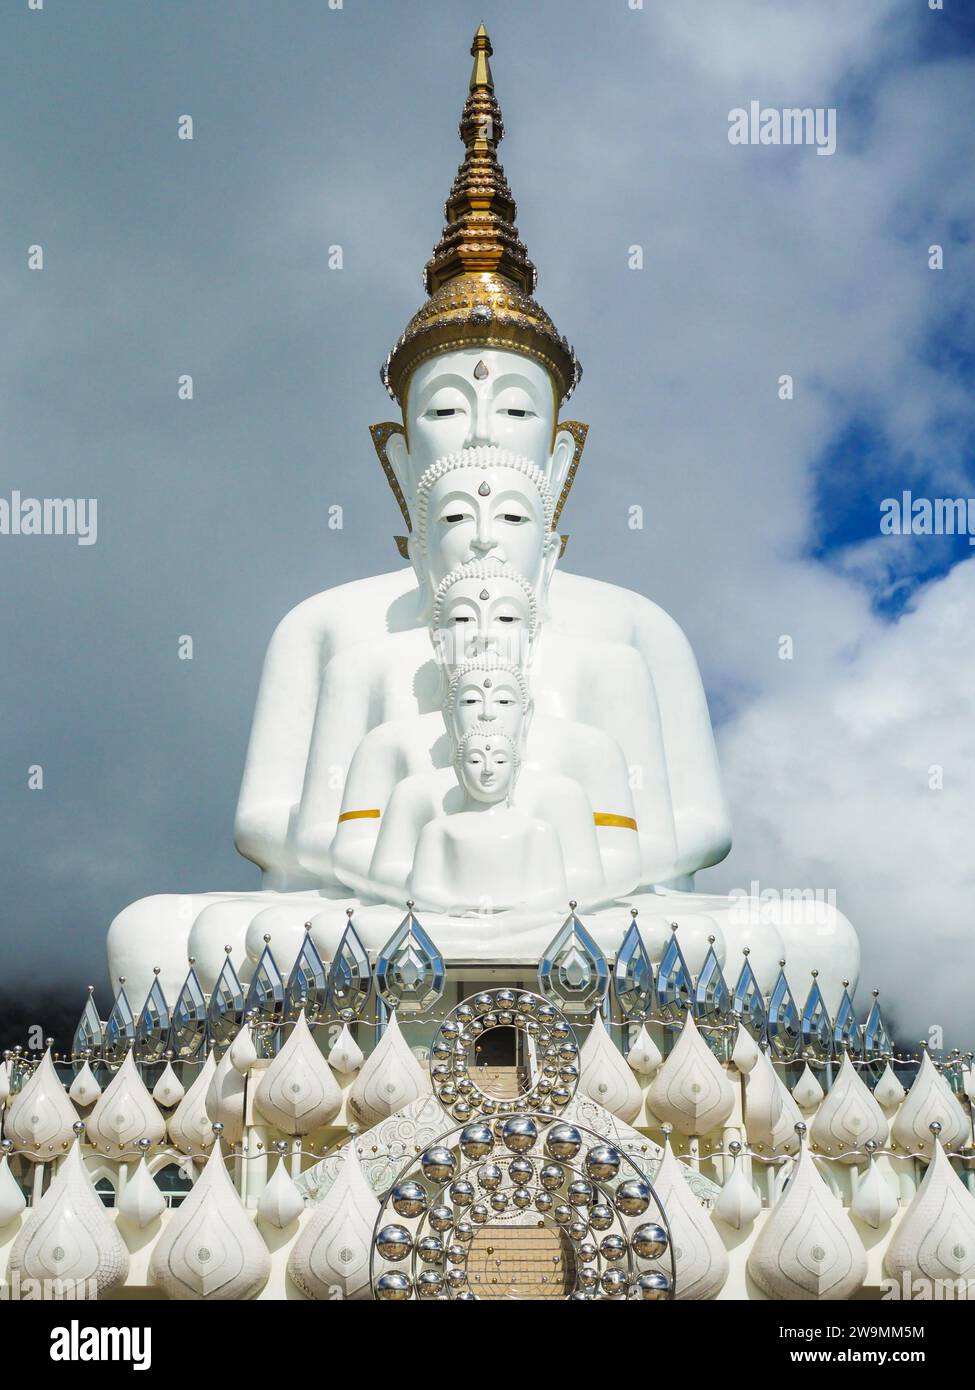 Wat Phra That Pha Sorn Kaew, Provinz Phetchabun. Fotografie Phetchabun großer Buddha am sonnigen Tag. Wat Phra That Pha Sorn Kaew Tempel ist einer der Mos Stockfoto